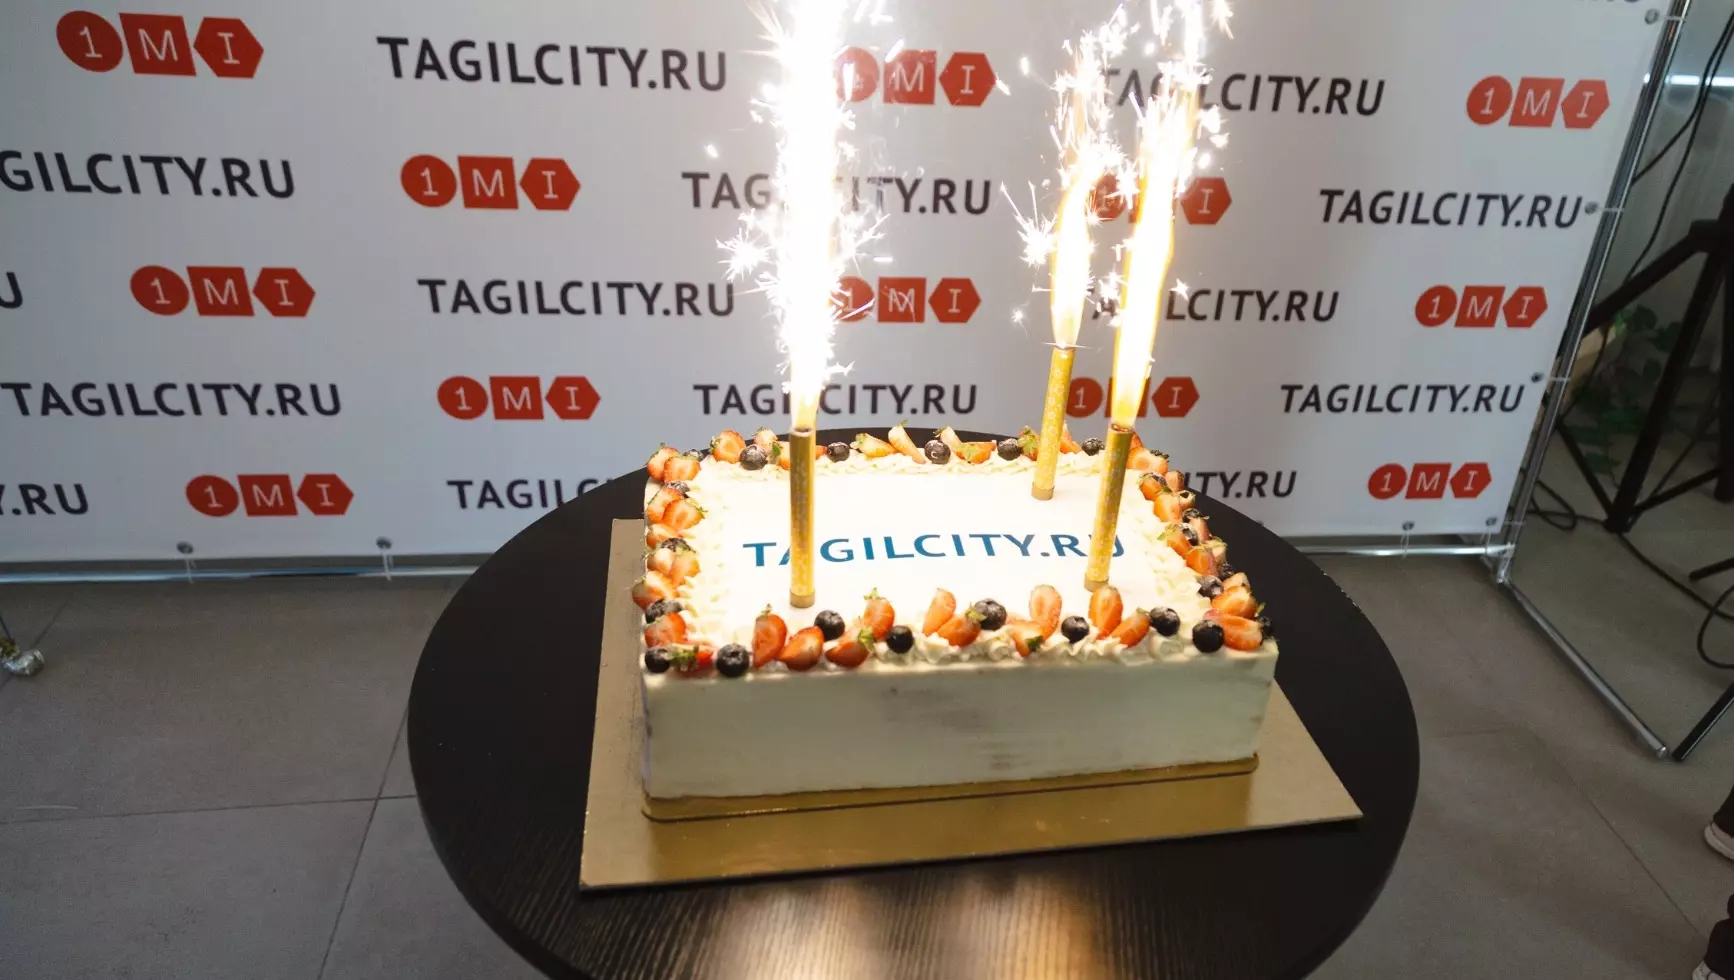 TagilCity.ru — 16 лет! Время офигительных историй